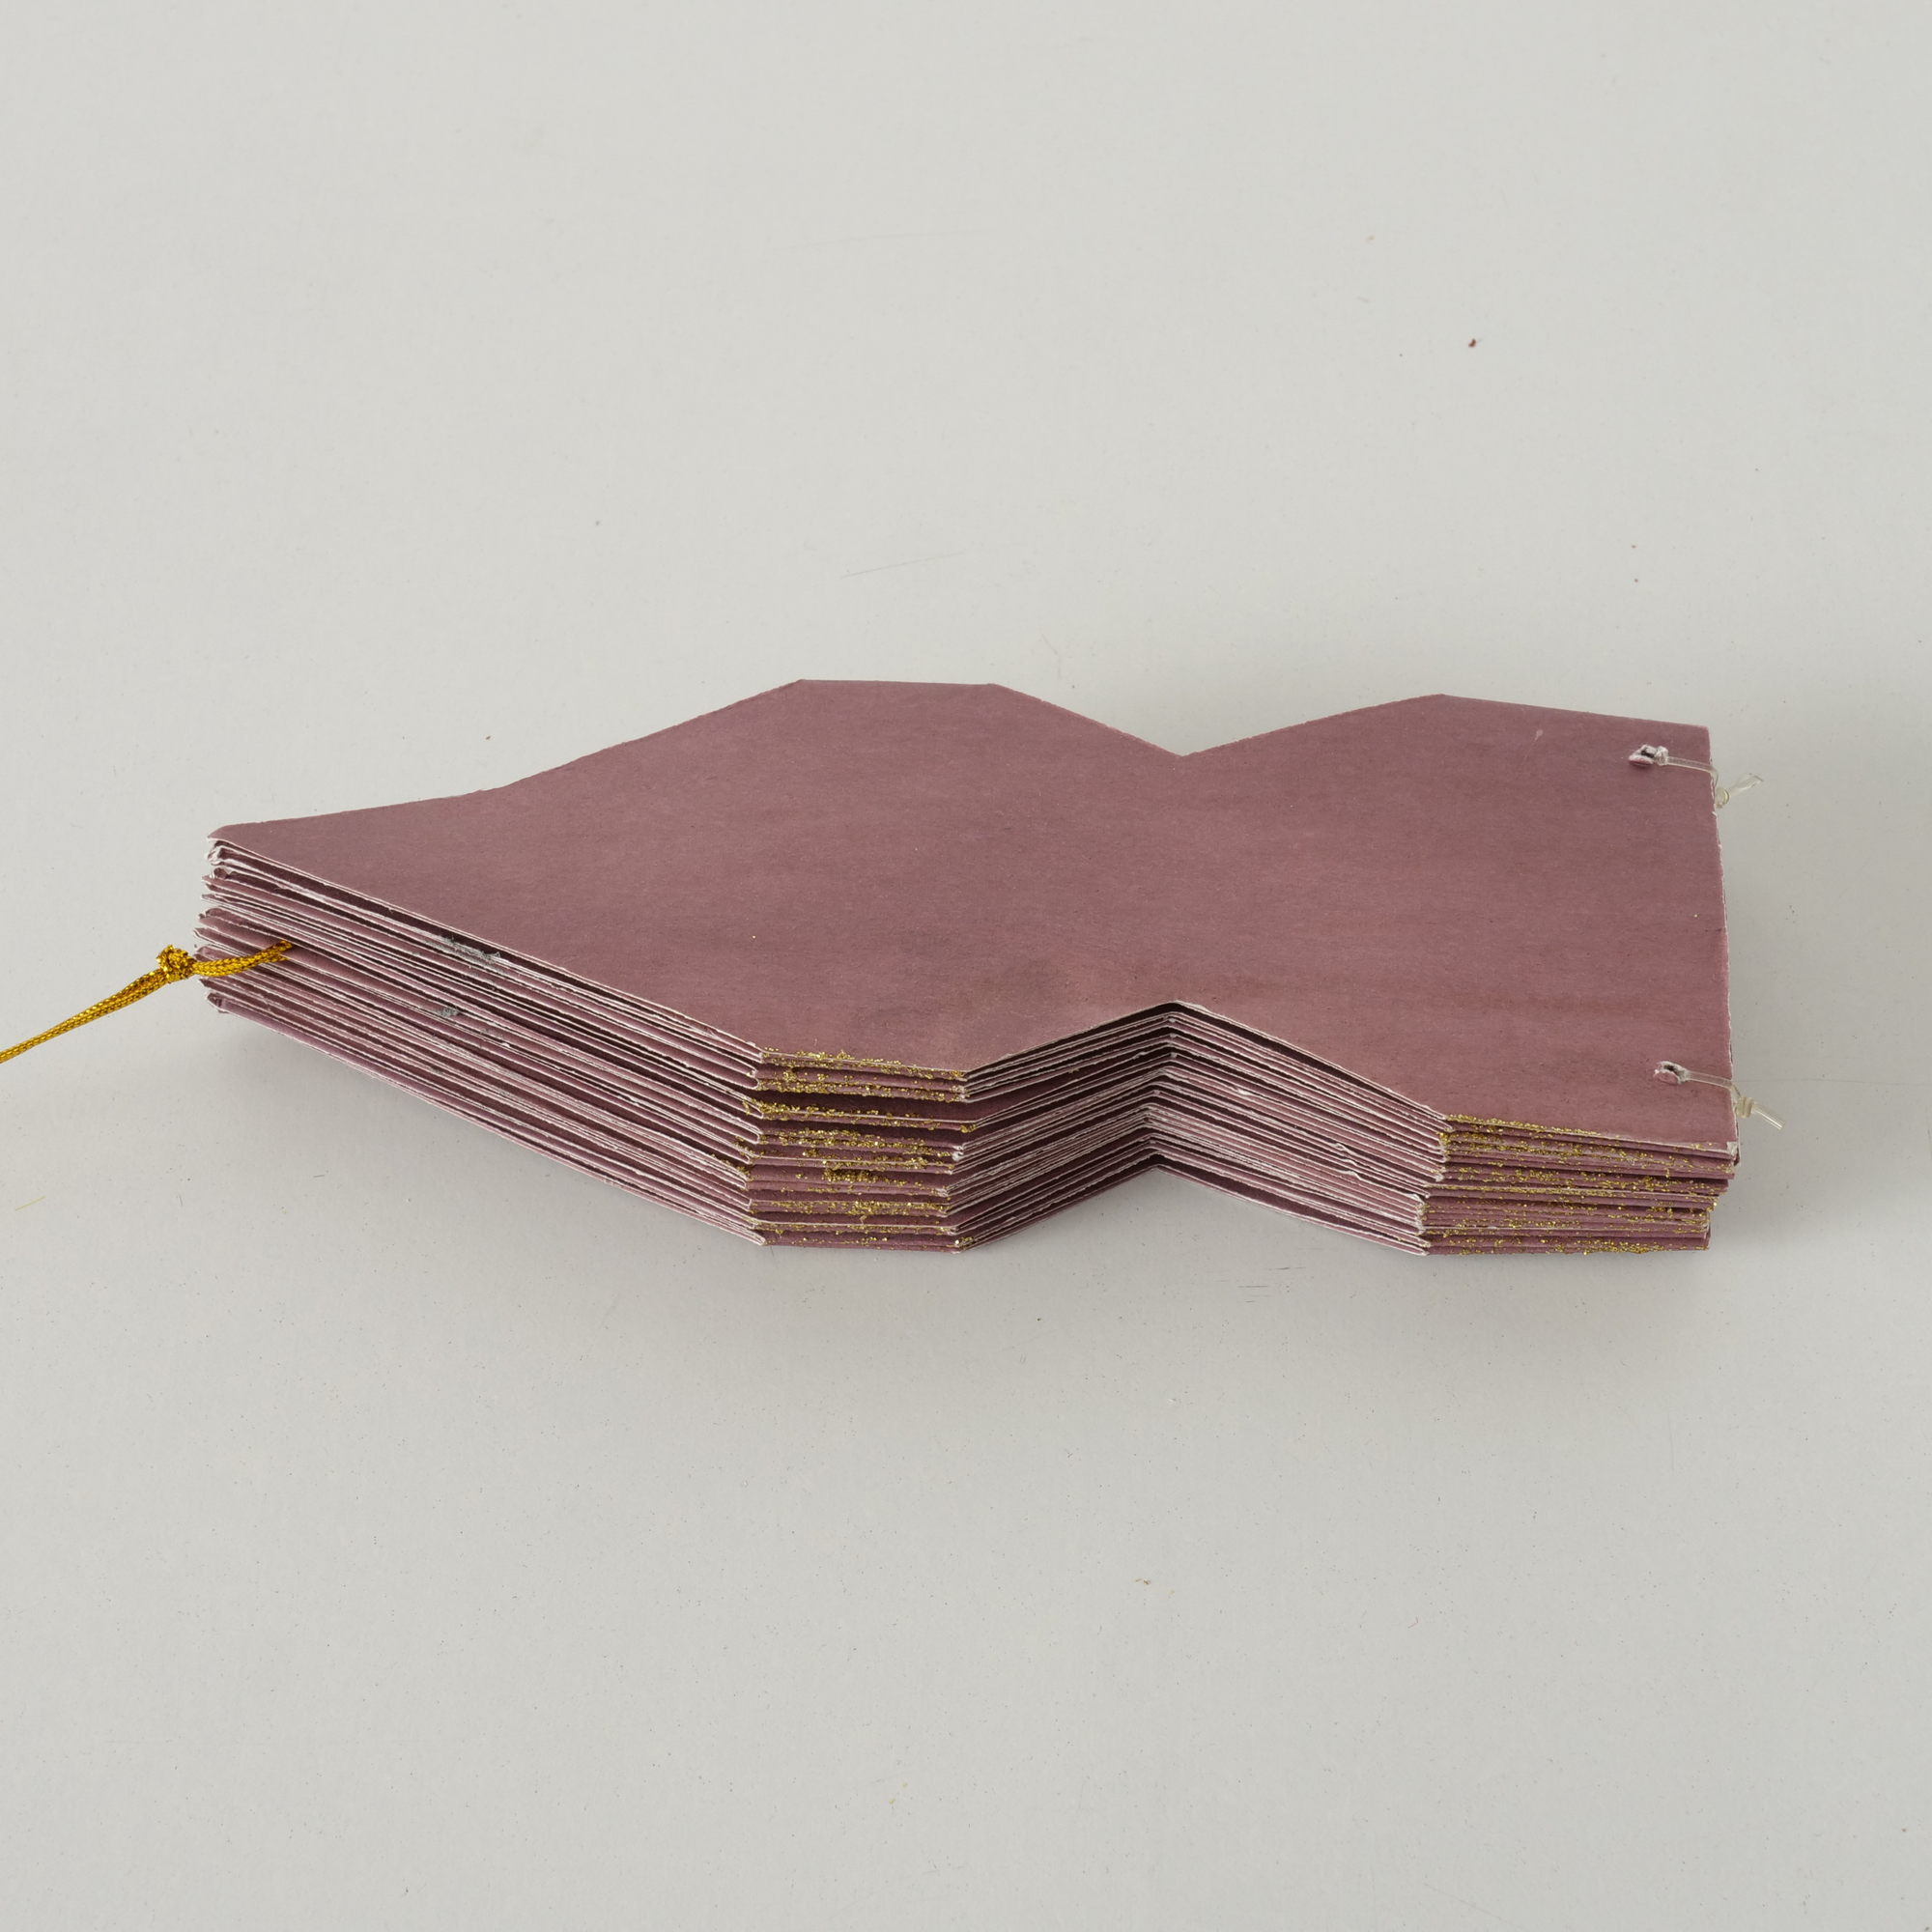 Hängestern 'Kassia' Papier rosa Ø 30 cm, 3 Designs sortiert + product picture